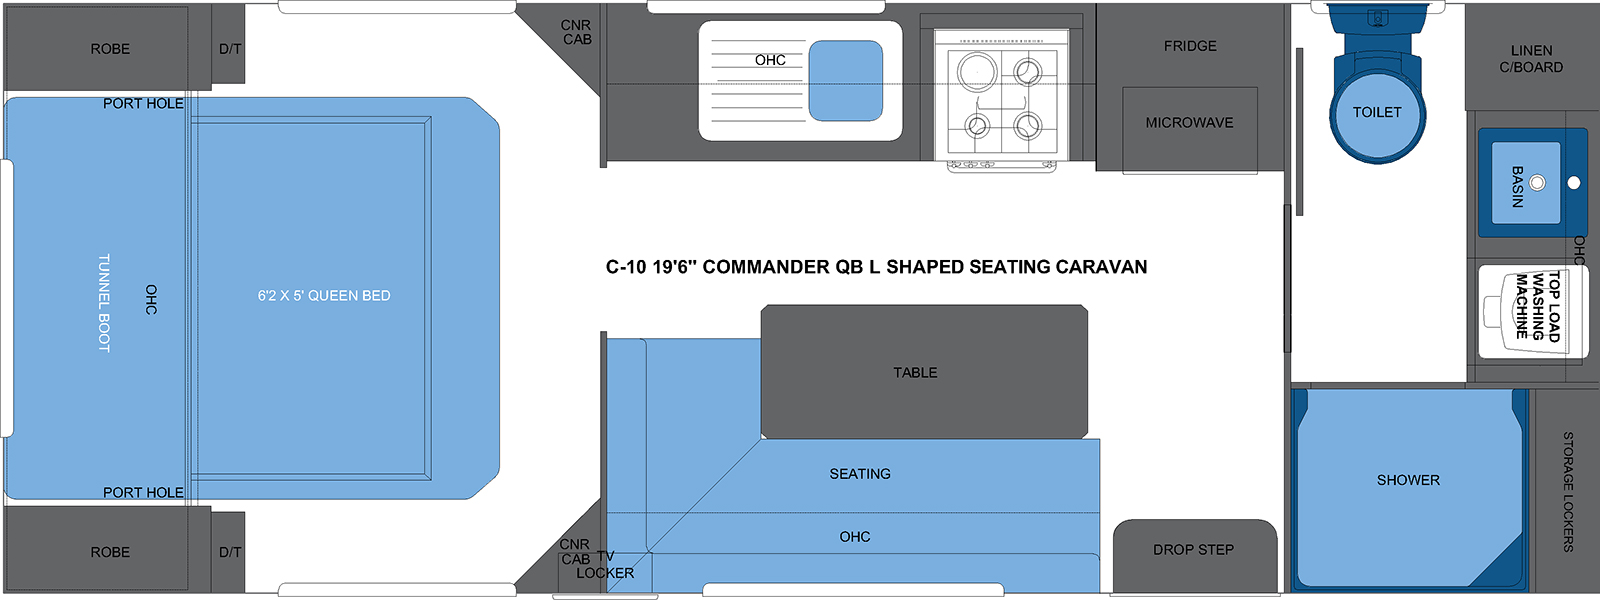 C-10 19'6 COMMANDER QB L SHAPED SEATING CARAVAN